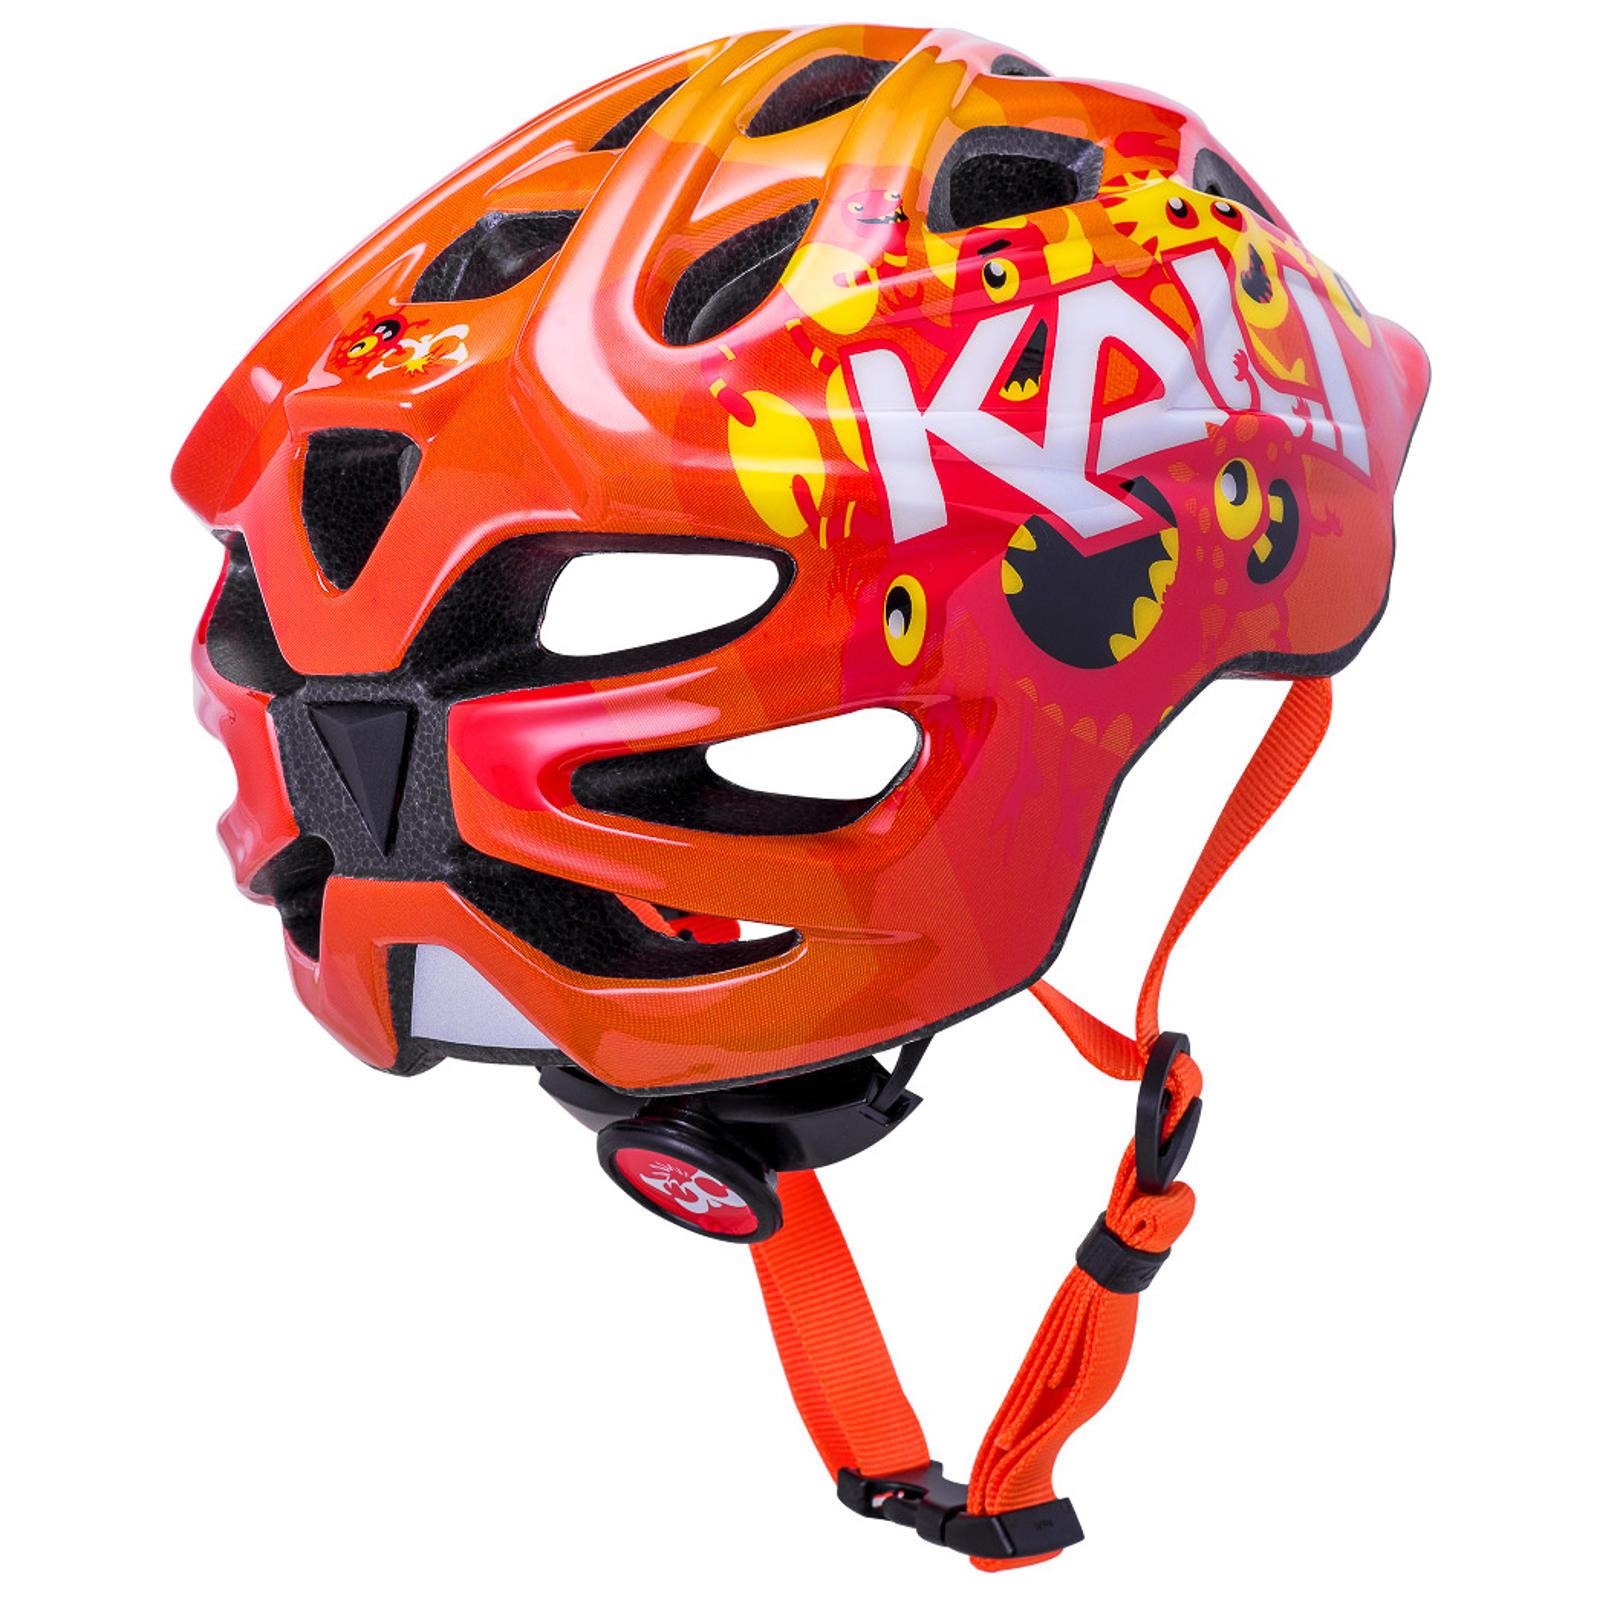 Kali Chakra Kinder Fahrradhelm-Red-XSmall 48-54cm UVP 30